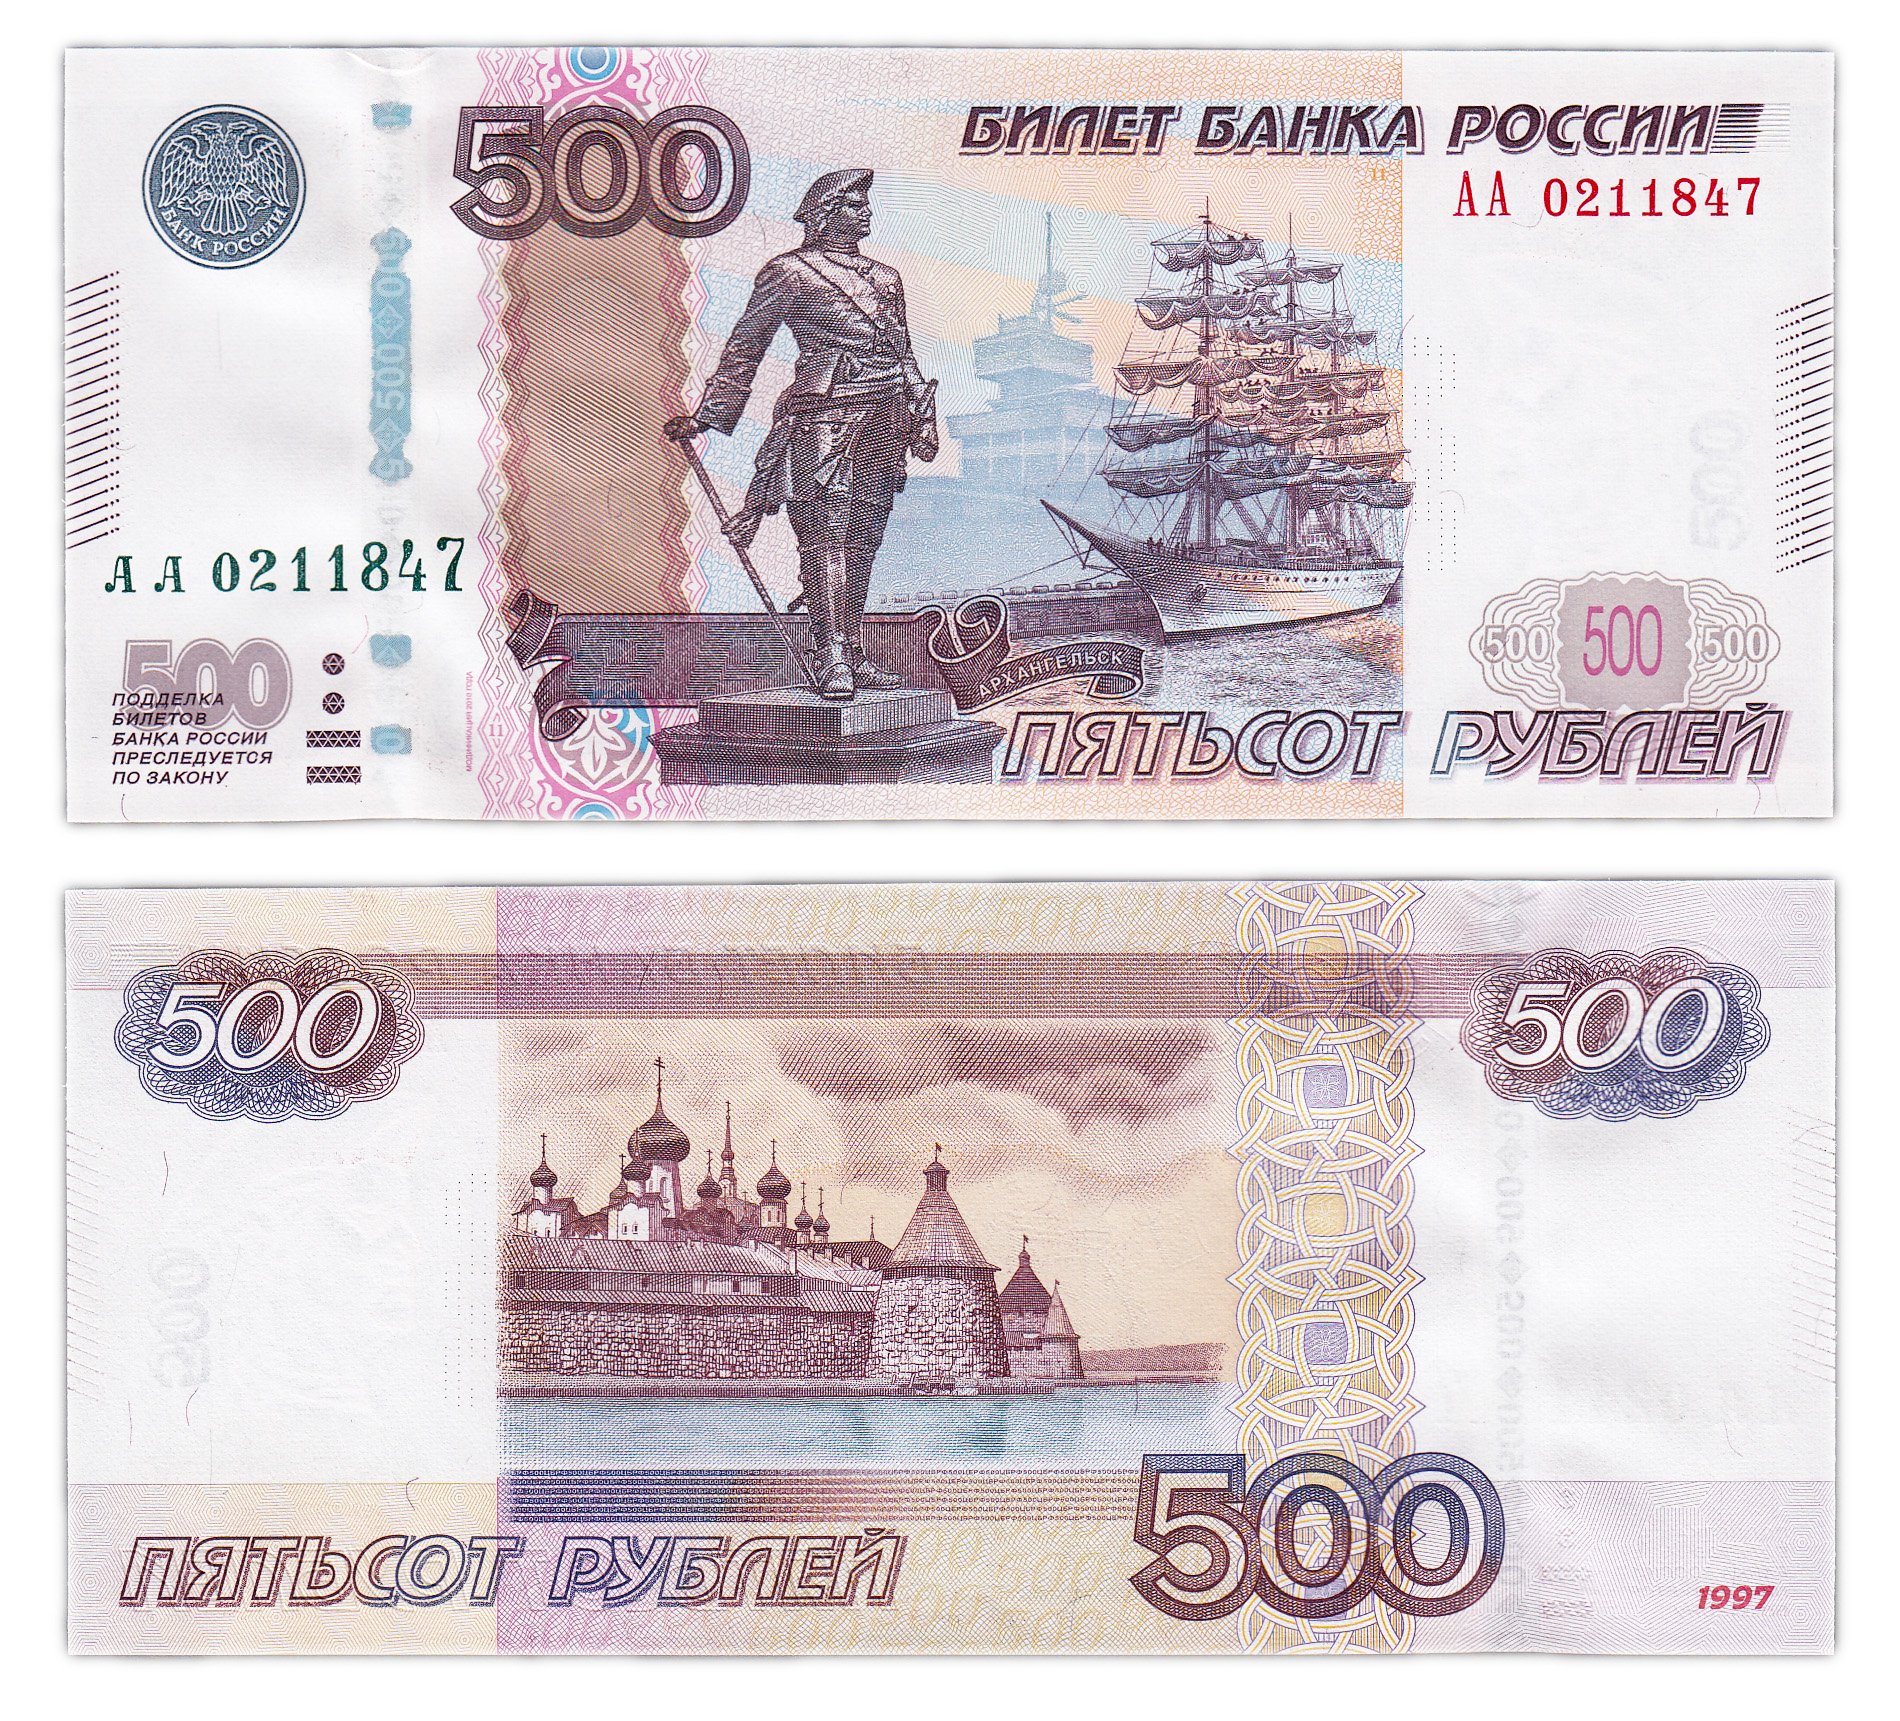 500 рублей россии. Банкнота России 500 рублей. 500 Рублей 1997 модификация 2010 года.